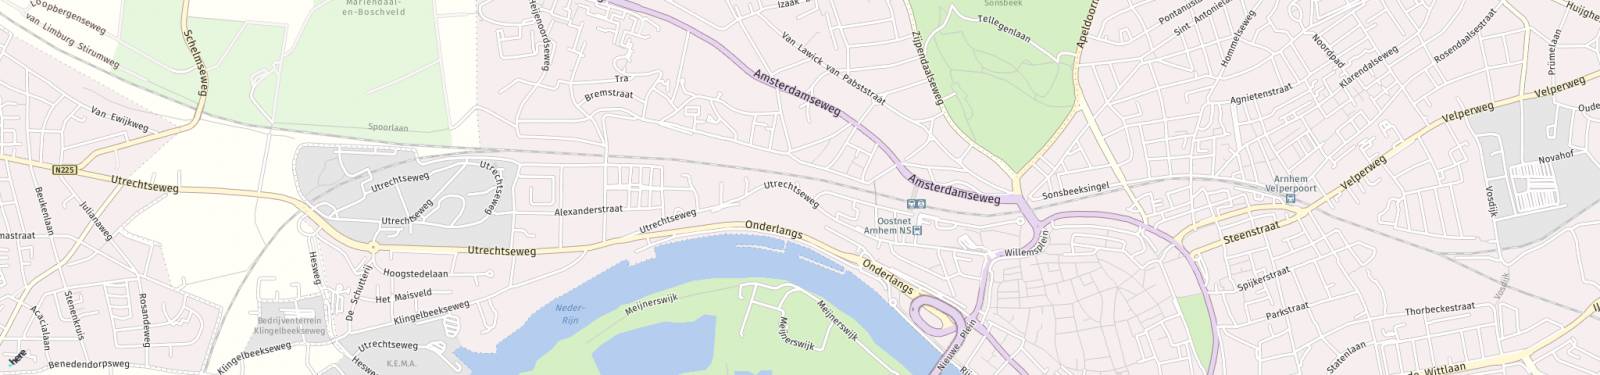 Kaart met locatie Kamer Utrechtseweg